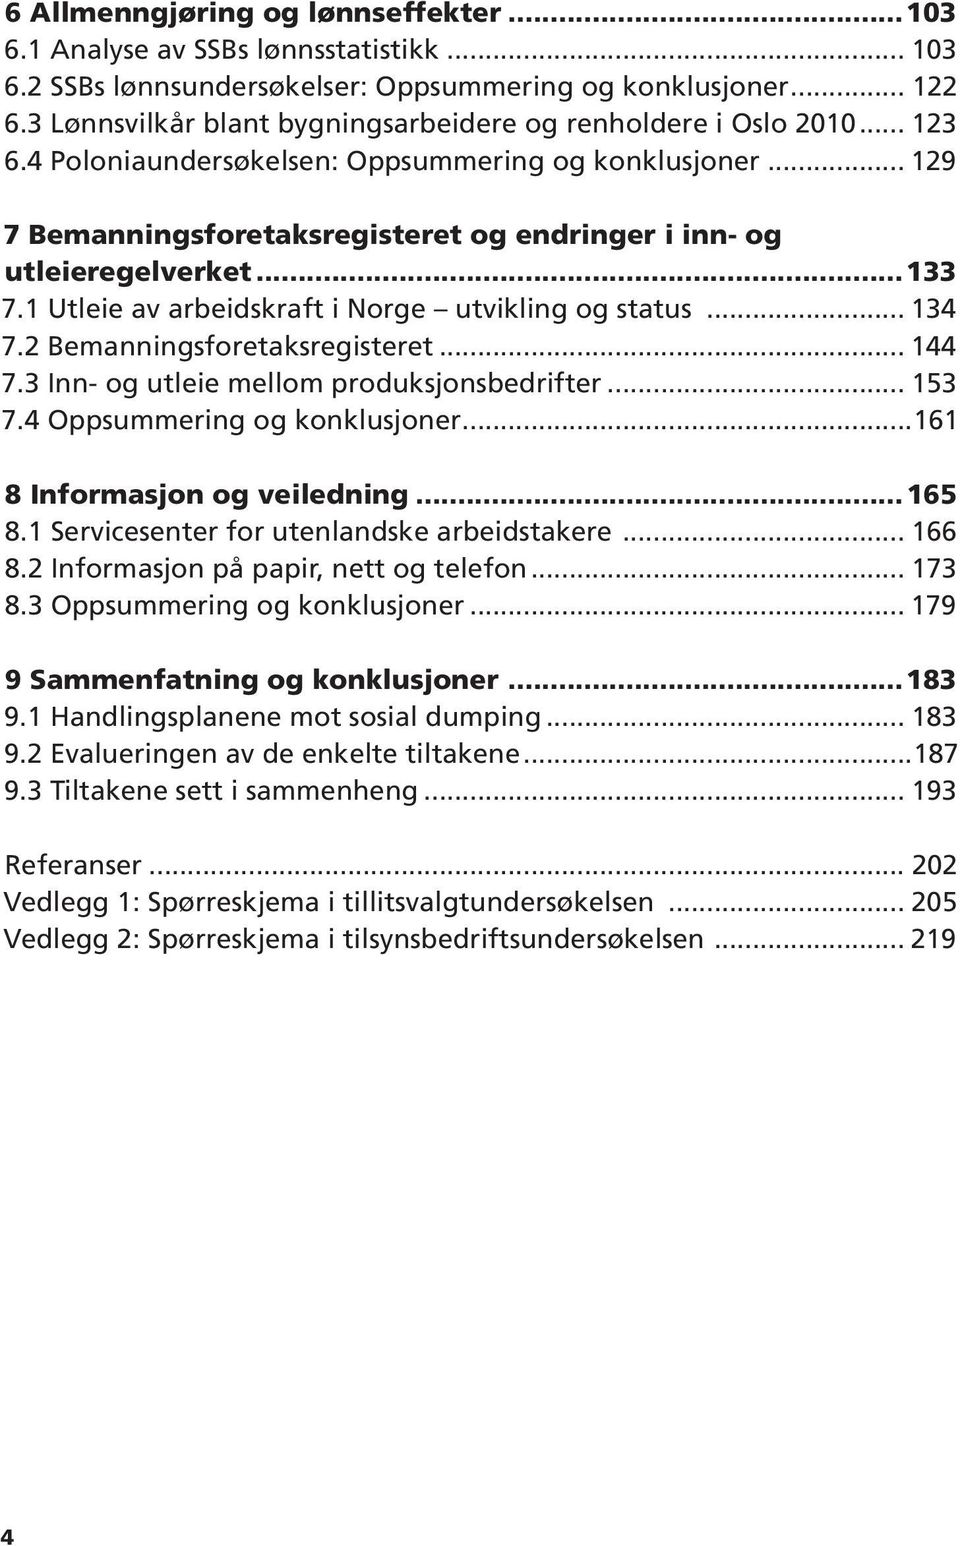 .. 129 7 Bemanningsforetaksregisteret og endringer i inn- og utleieregelverket...133 7.1 Utleie av arbeidskraft i Norge utvikling og status... 134 7.2 Bemanningsforetaksregisteret... 144 7.